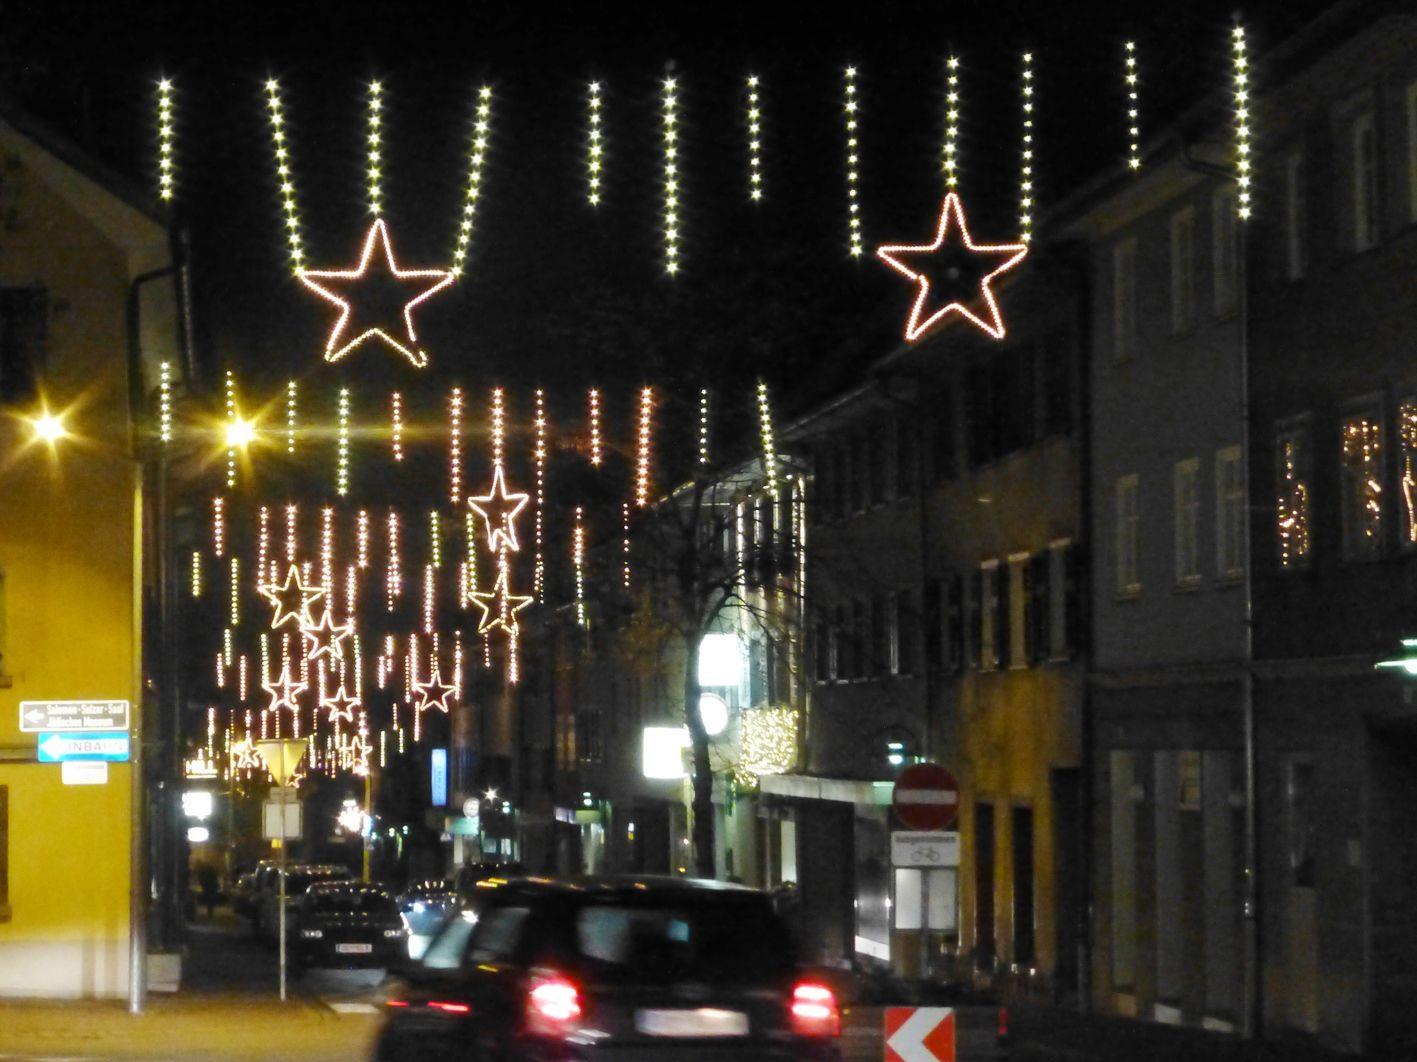 24 Lichtvorhänge mit 15 Weihnachtssternen erstrahlen seit Freitagabend in der Marktstraße